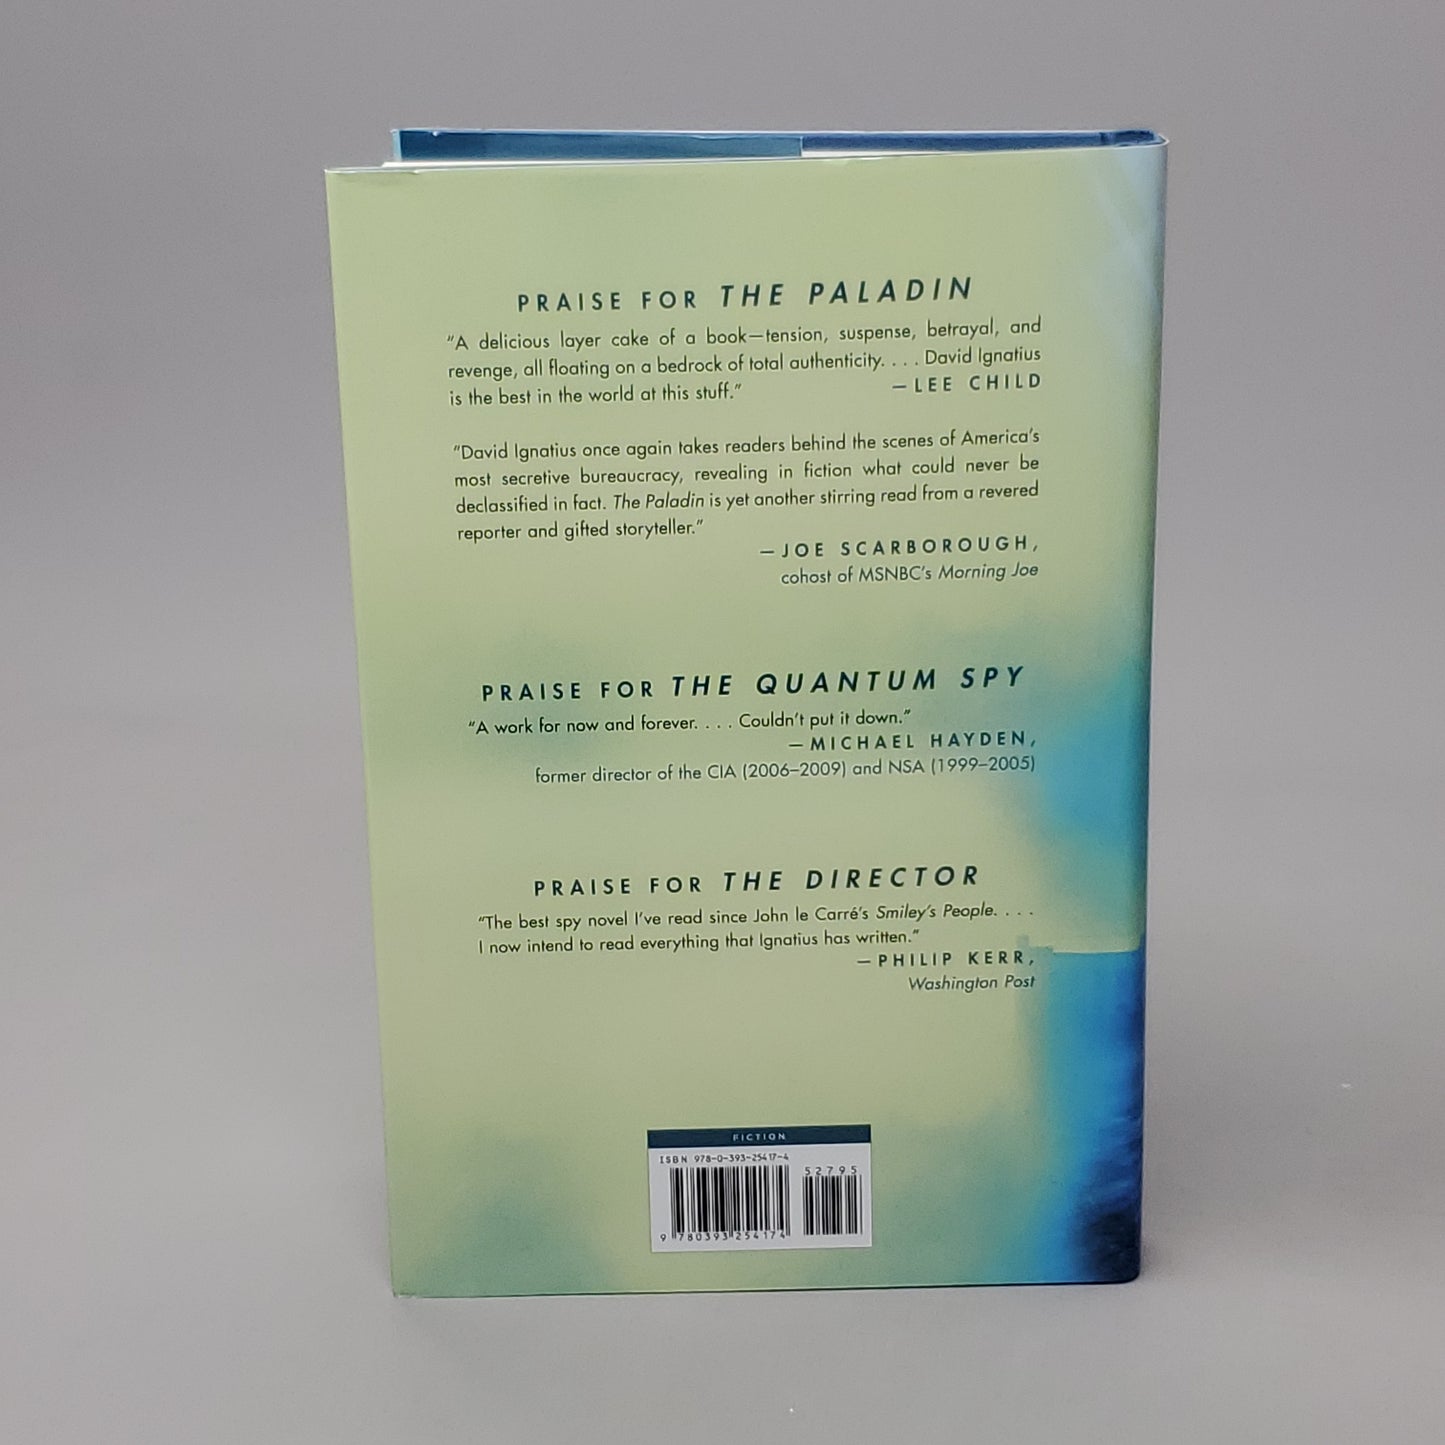 THE PALADIN A Spy Novel by David Ignatius Book Hardback (New)